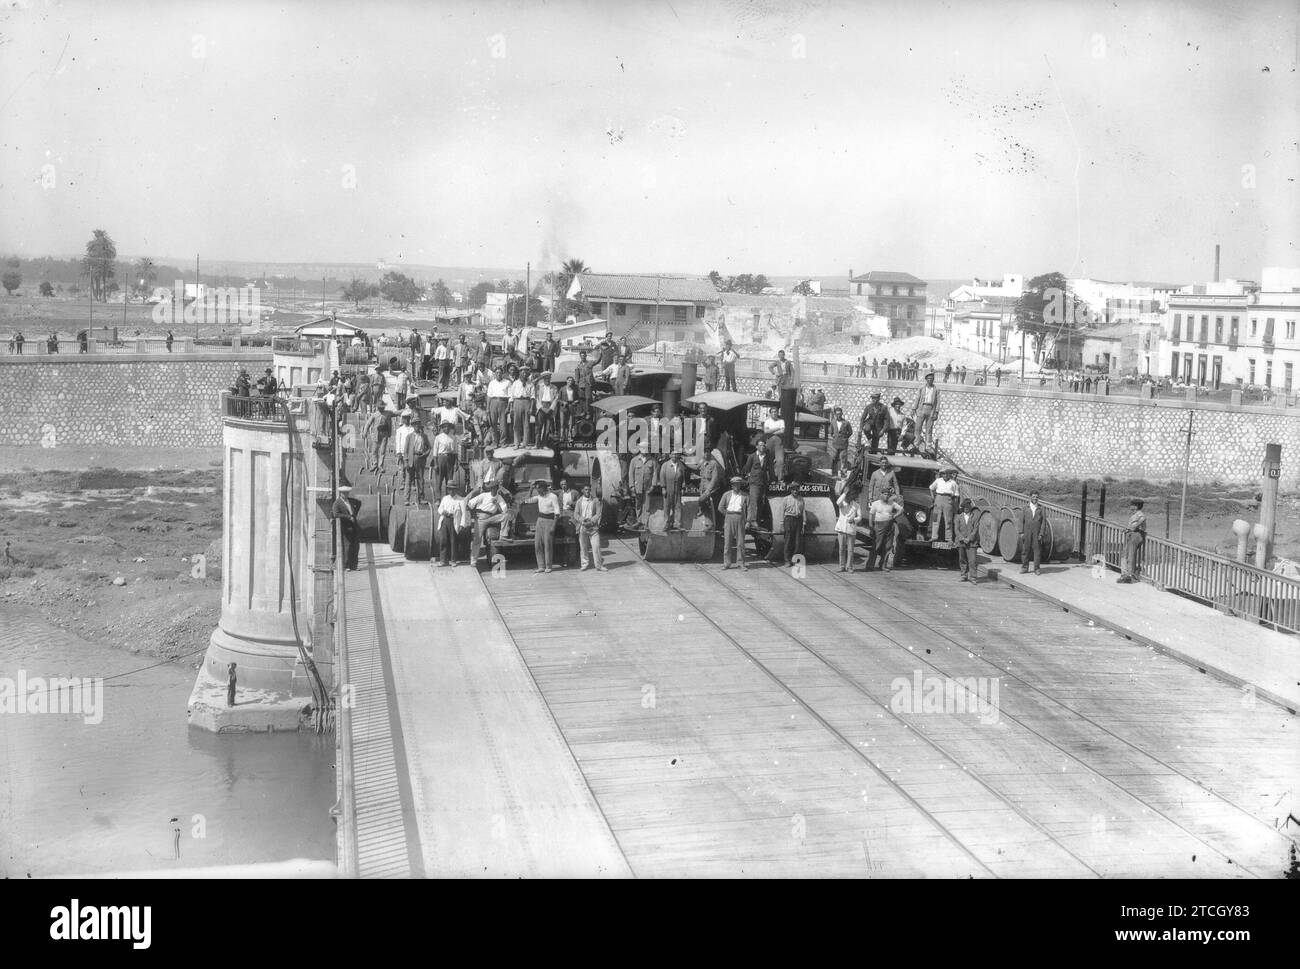 12/31/1930. Ponte San Telmo in costruzione. Crediti: Album / Archivo ABC Foto Stock